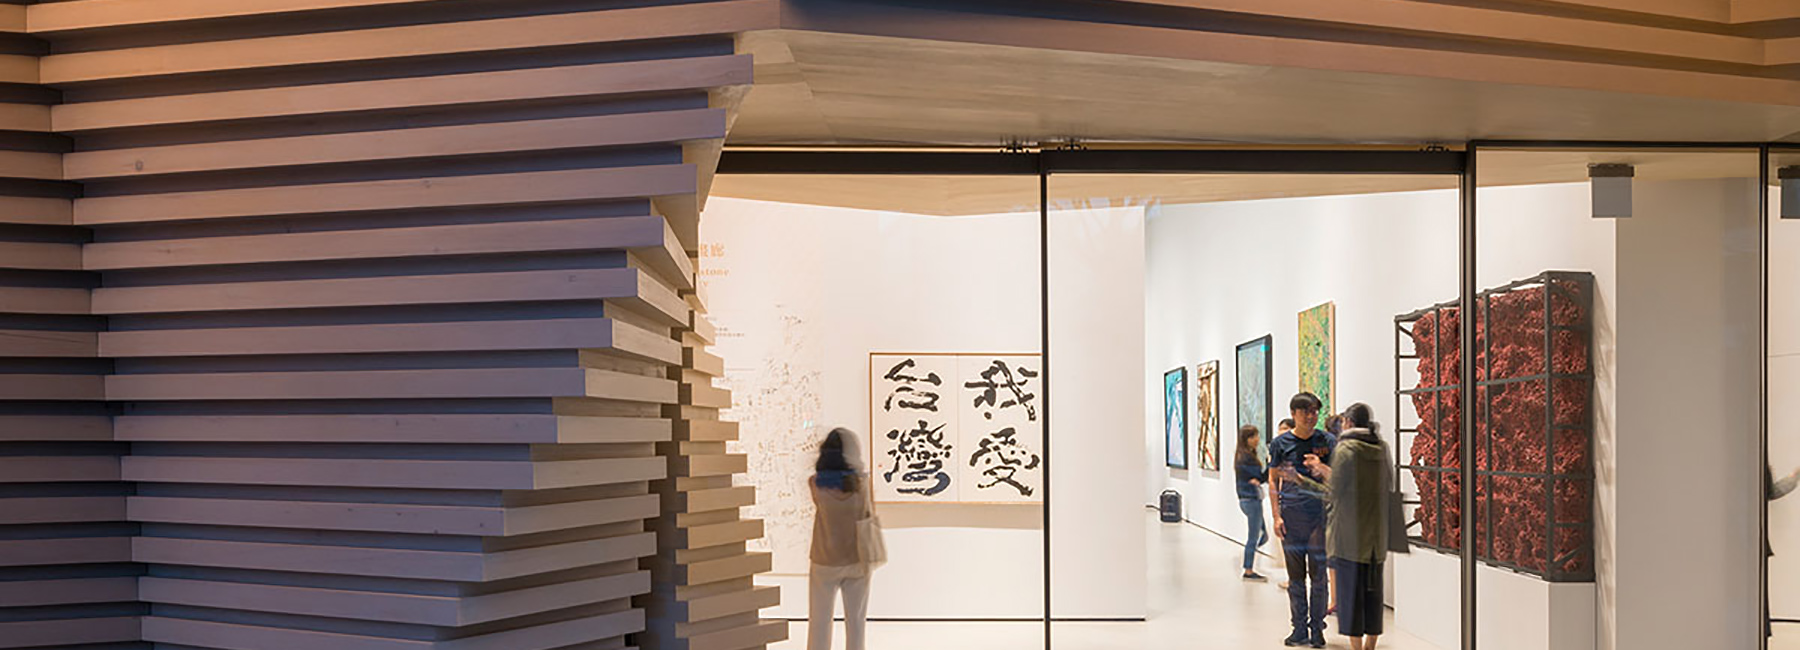 خلاقیت در طراحی گالری سنگ سفید taipei تایوان با استفاده از فضای ارگانیک